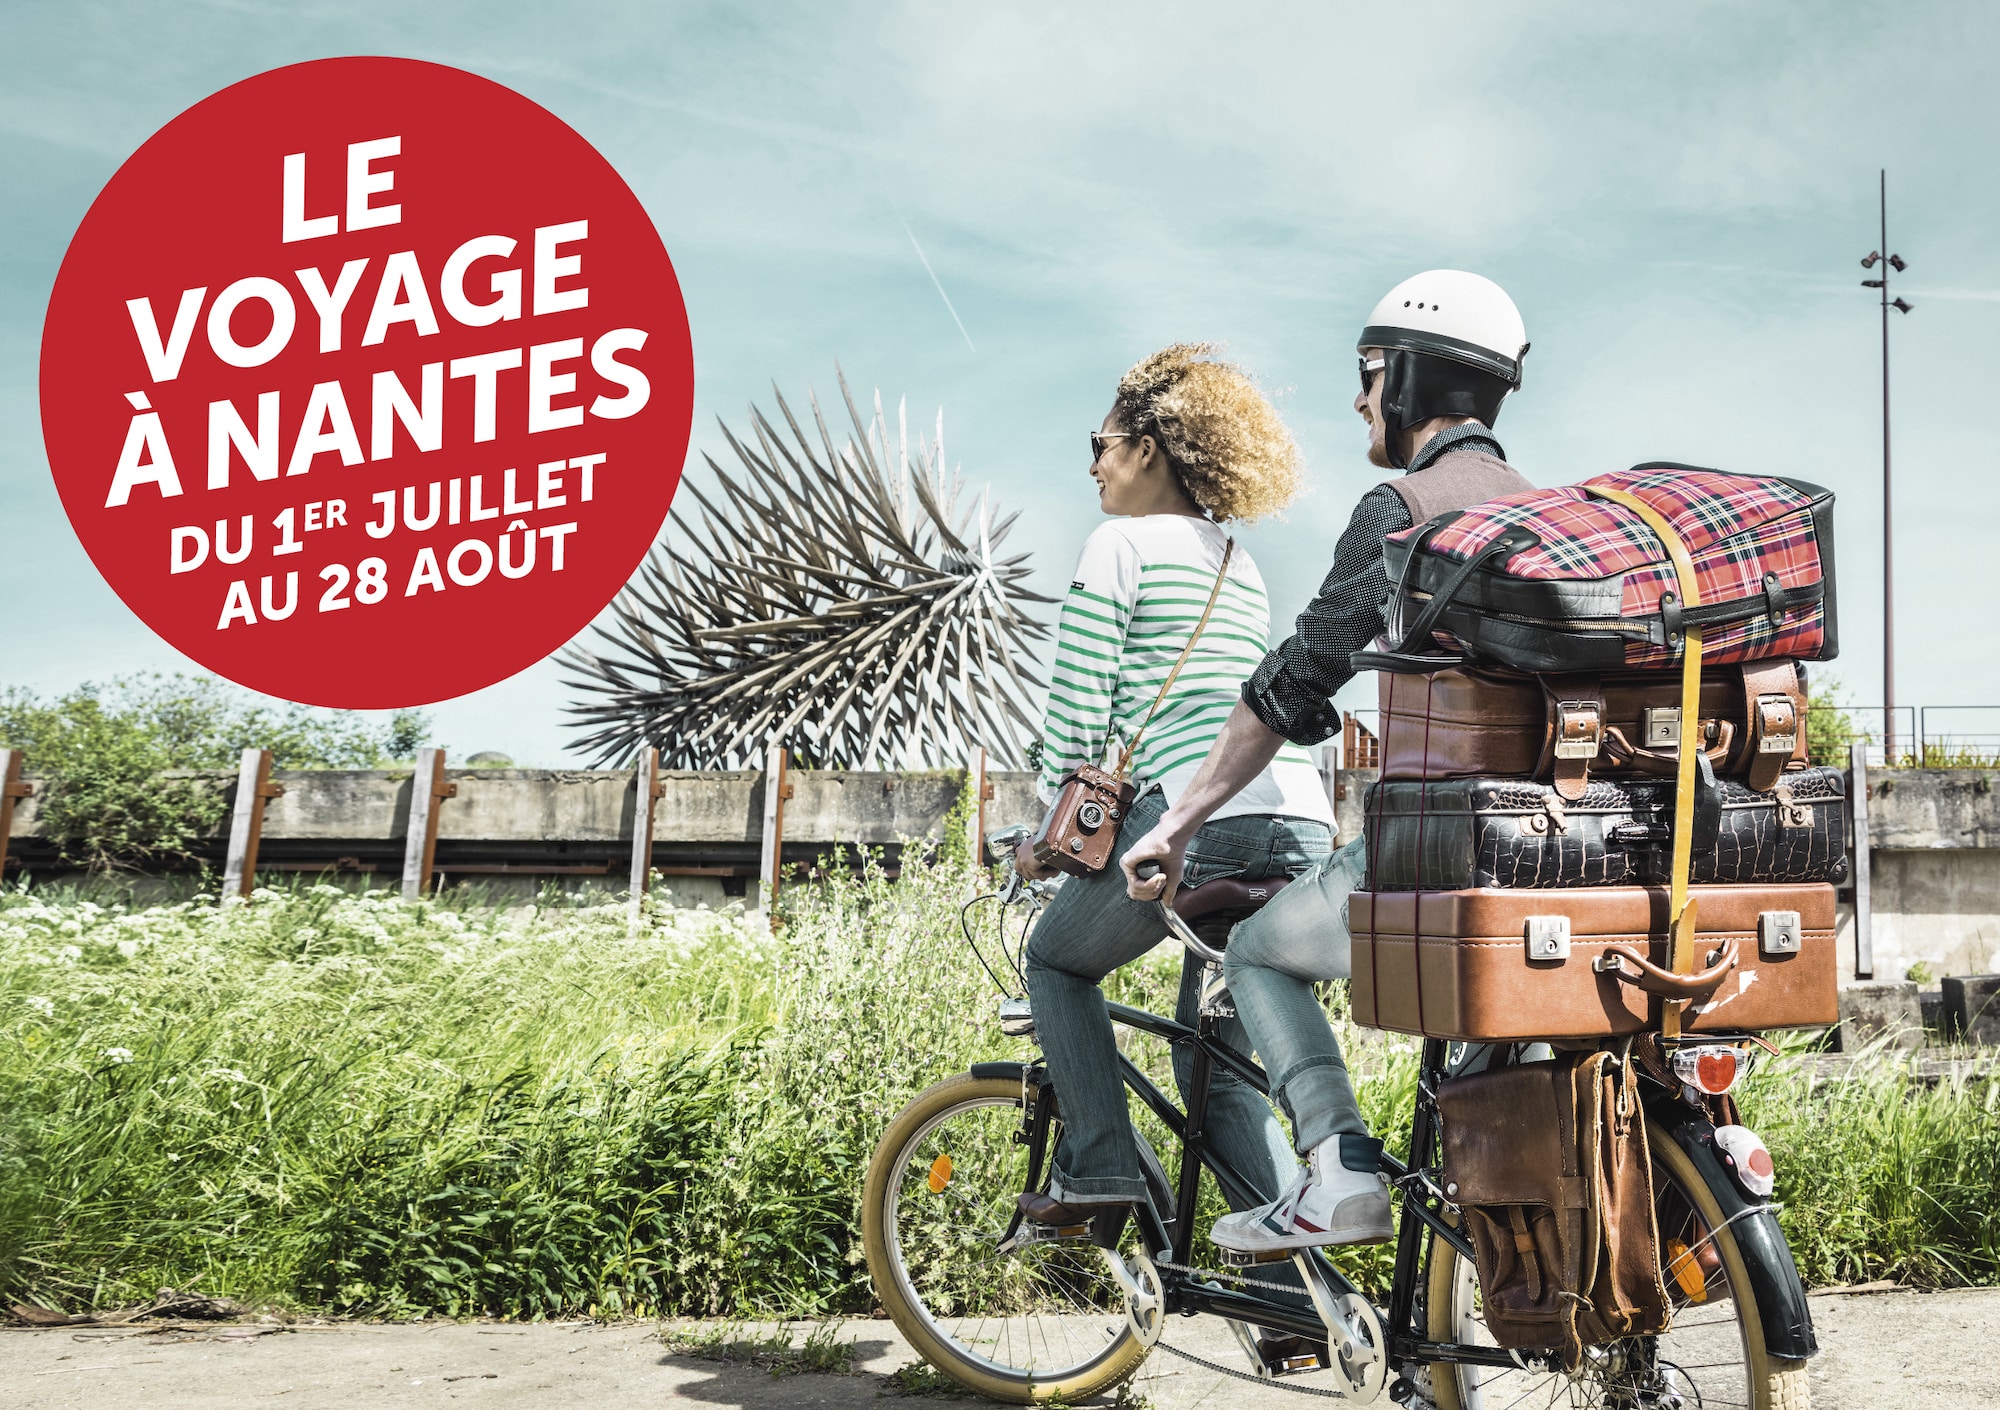 Visuel de l'édition 2016 le Voyage à Nantes